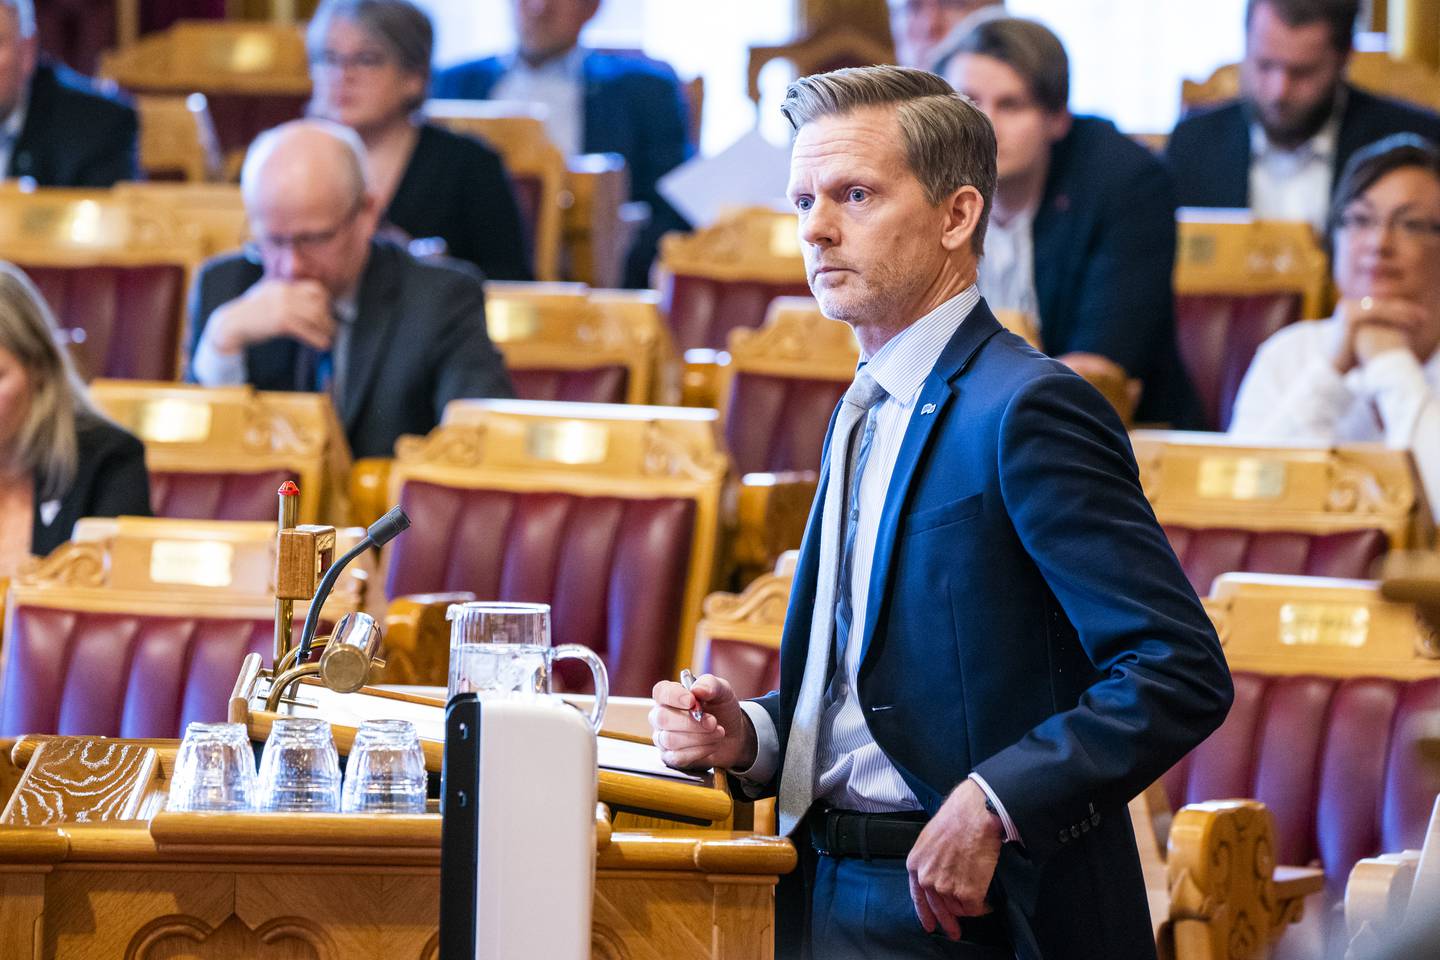 Høyre foreslår å styrke tilbudet om gratis sommerferie til økonomisk vanskeligstilte barnefamilier, sier stortingsrepresentant Tage Pettersen (H). Foto: Håkon Mosvold Larsen / NTB